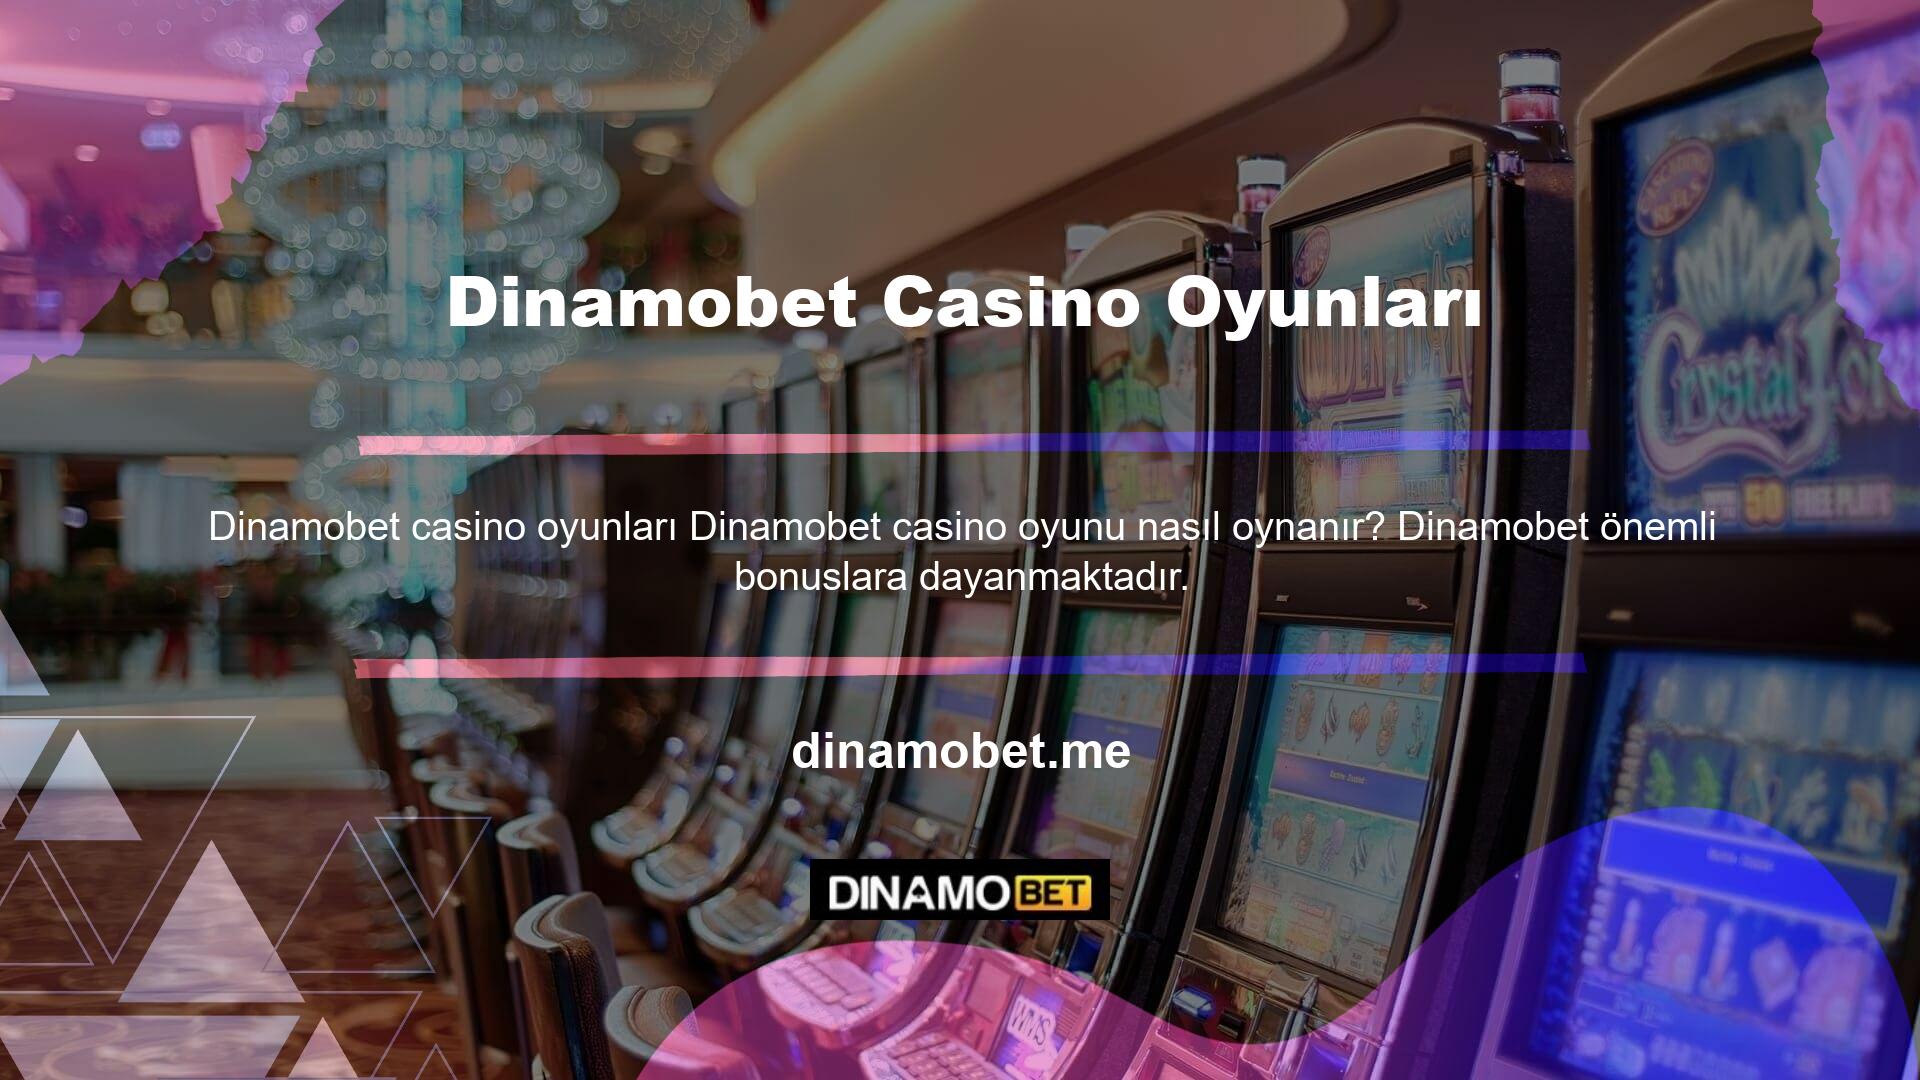 Casinoda ne tür para yatırma ve çekme oyunları ve canlı oyunlar bulunur? Sitede ayrıca bakara, blackjack, rulet ve poker gibi masa oyunları da bulunmaktadır